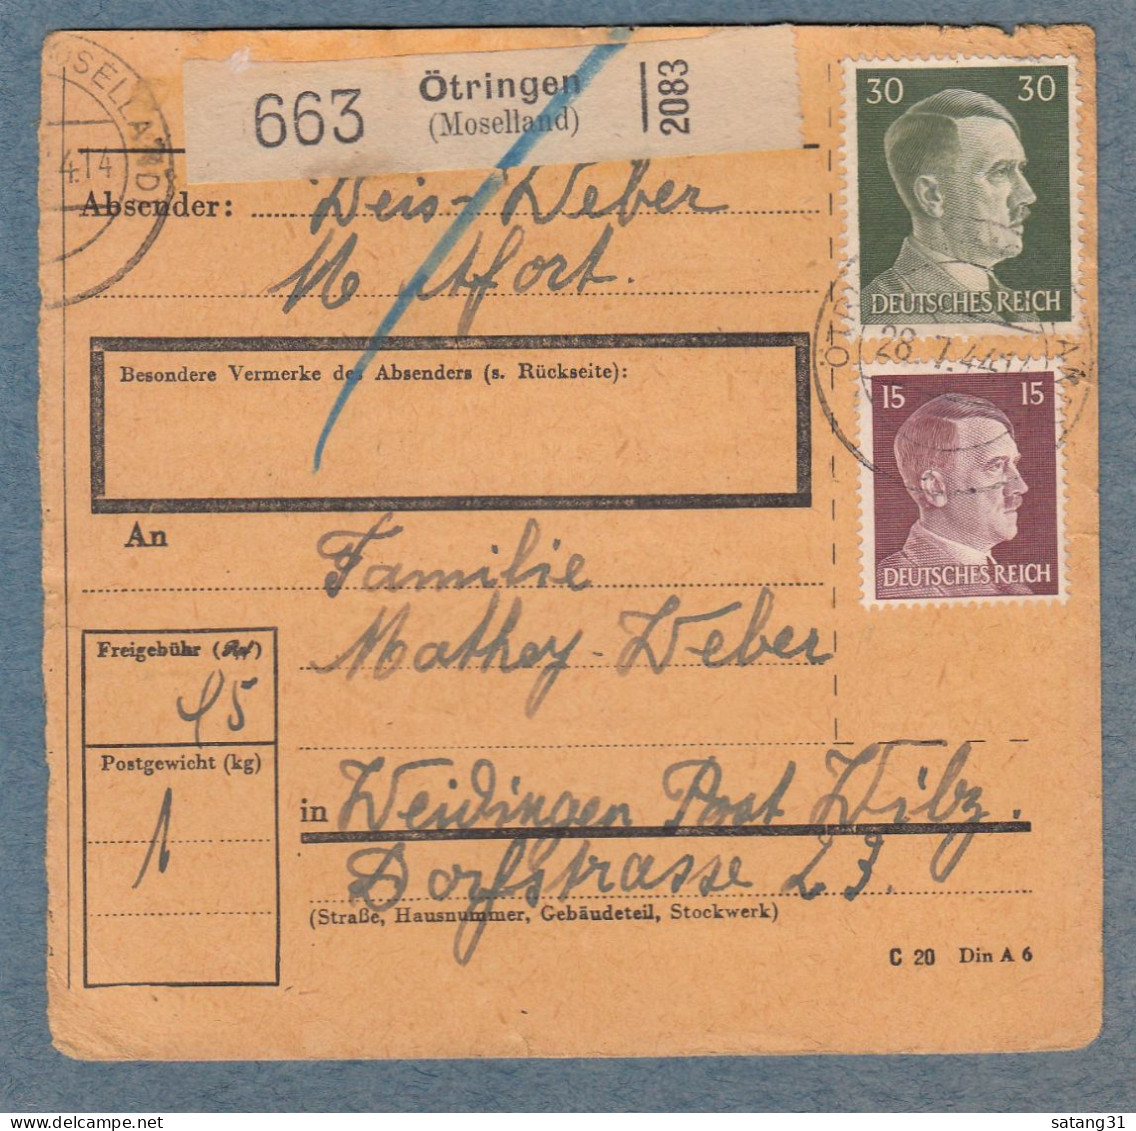 PAKETKARTE AUS ÖTRINGEN NACH WEIDINGEN,POST WILZ,27-7-44. - 1940-1944 Deutsche Besatzung